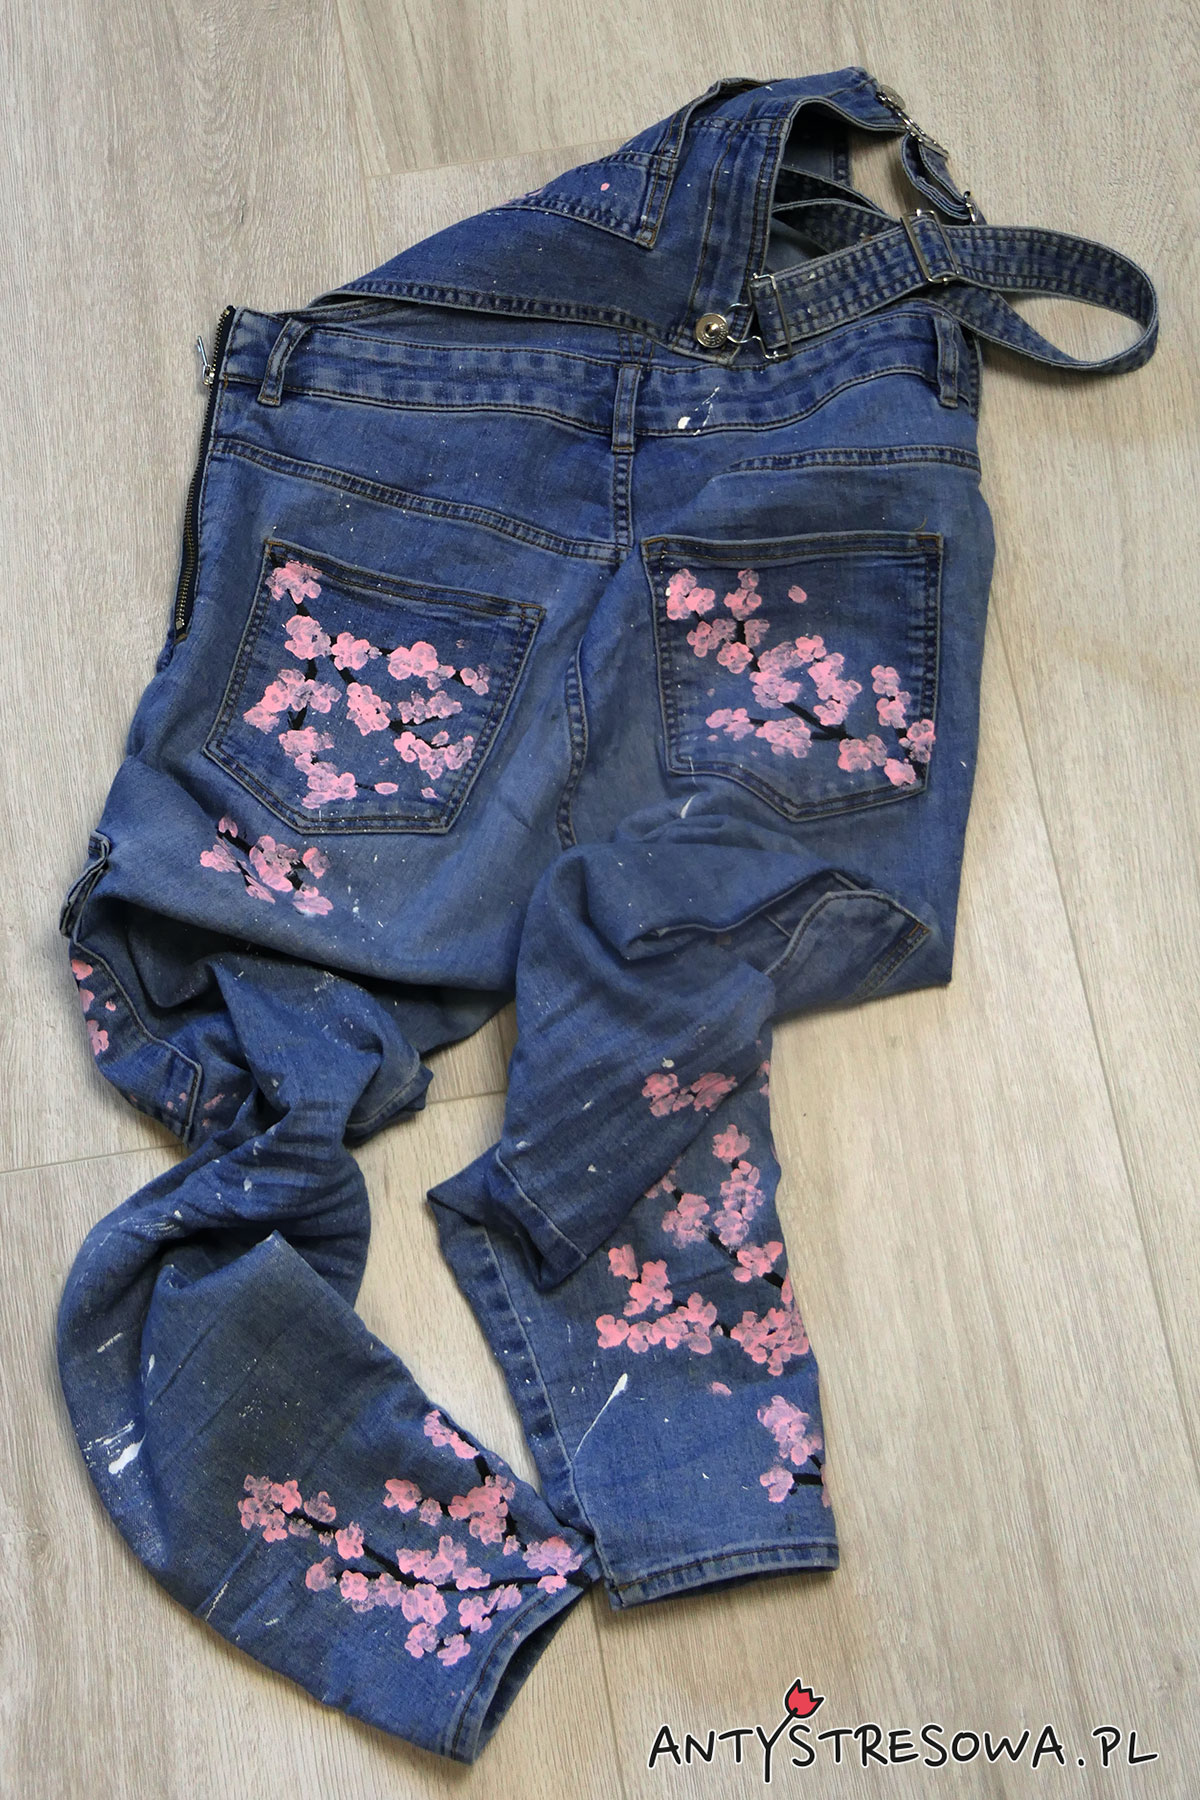 Malowanie jeansów farbami do tkanin -wzór kwiatu wiśni